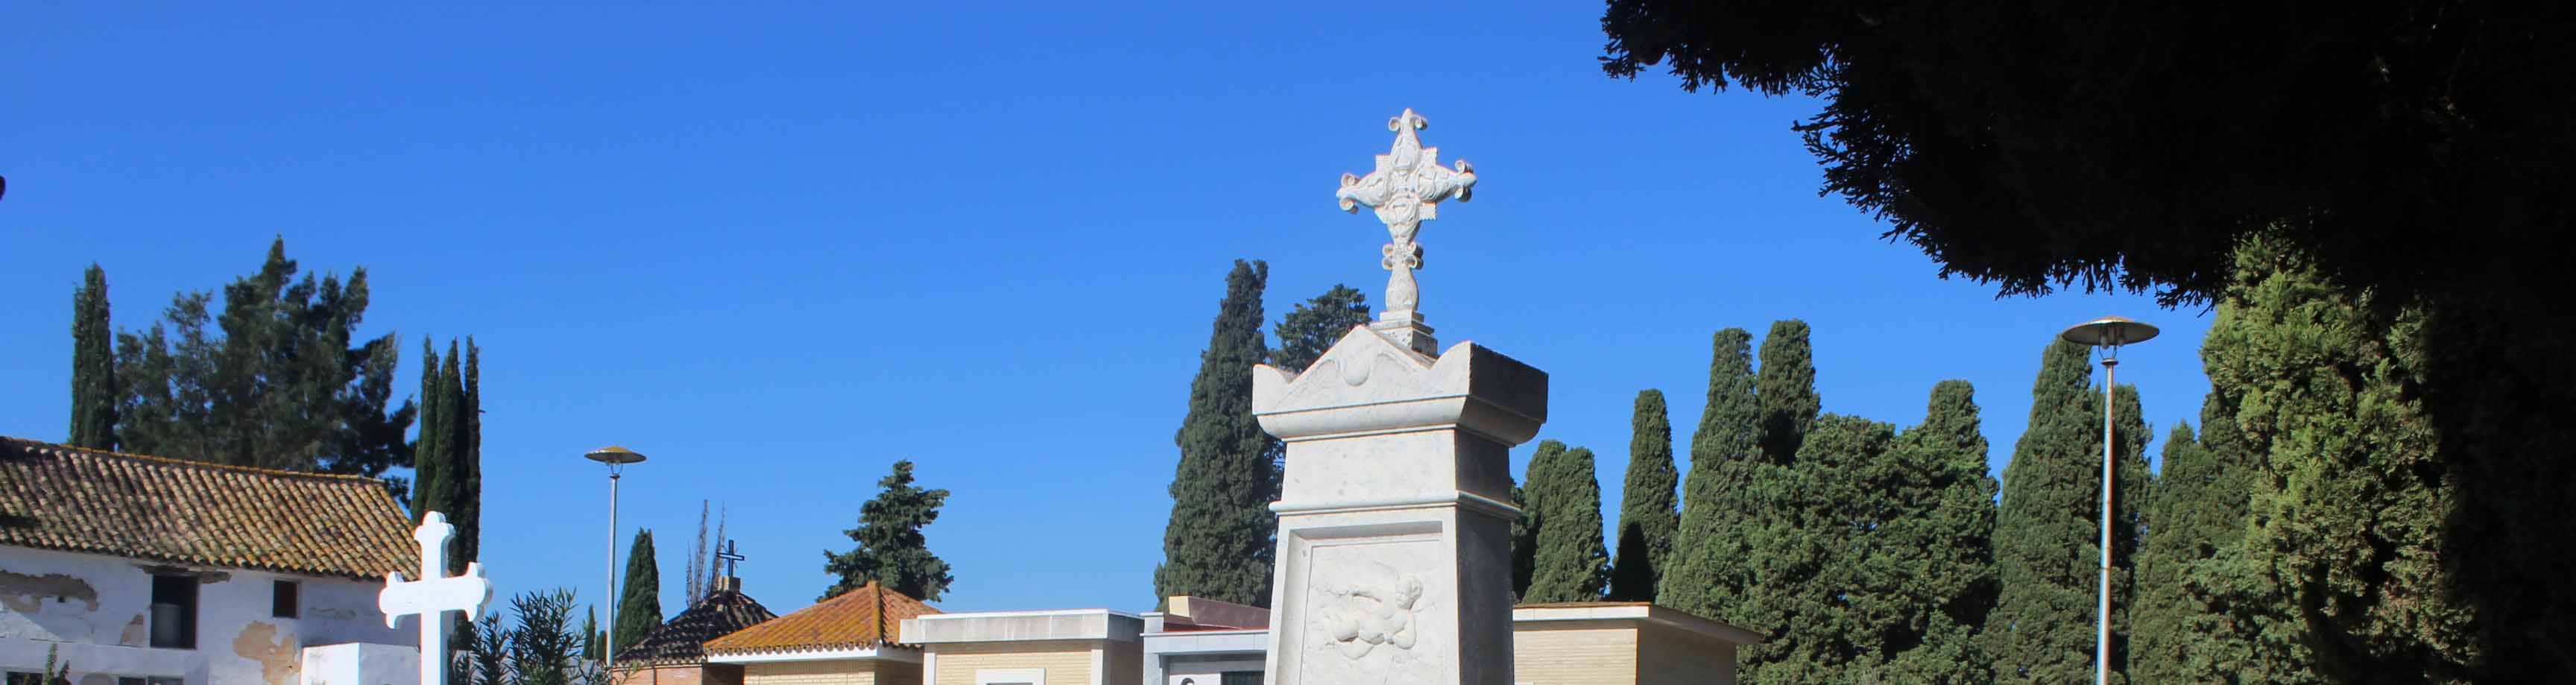 La fosa común ha sido hallada en el denominado patio de San Francisco del Cementerio de Utrera